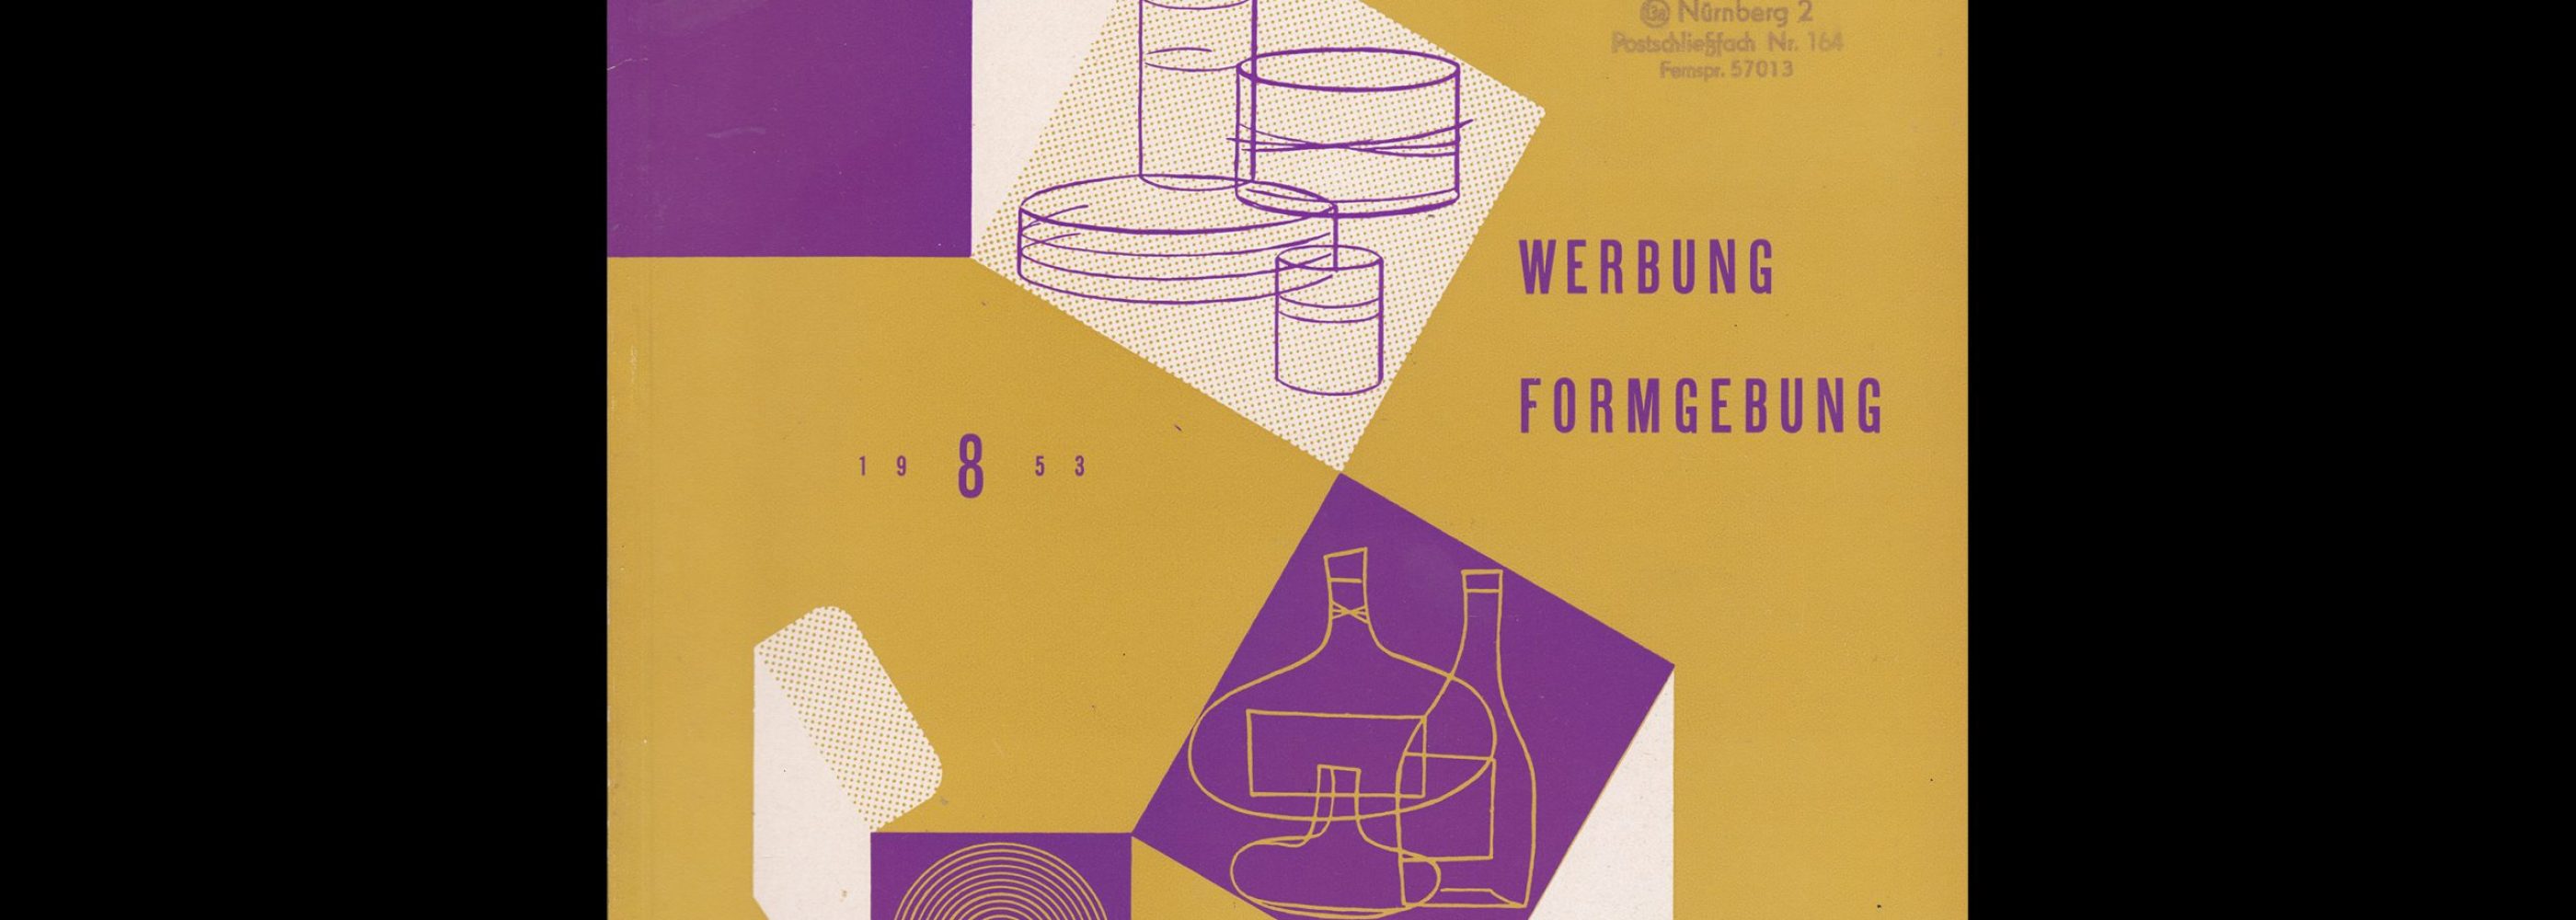 Graphik - Werbung + Formgebung, 8, 1953. Cover design by Curt John Witt